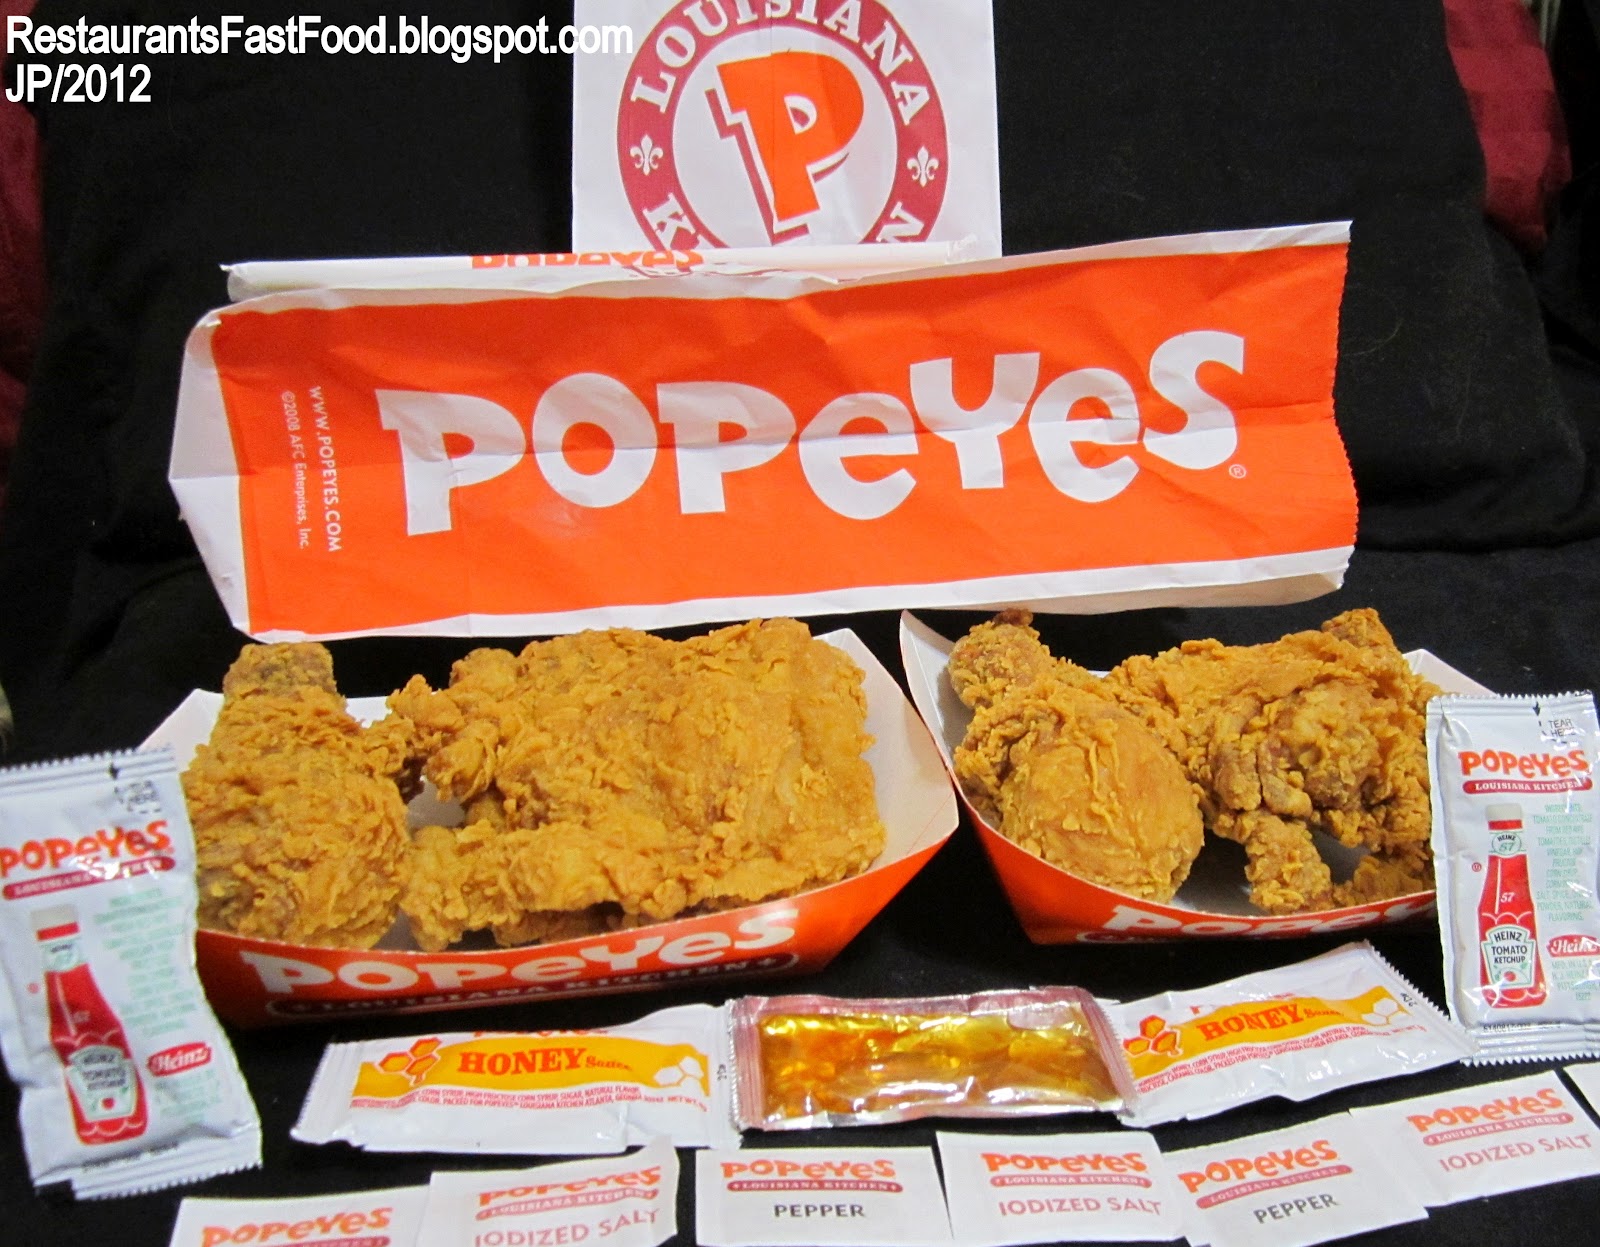 Popeyes Louisiana Chicken